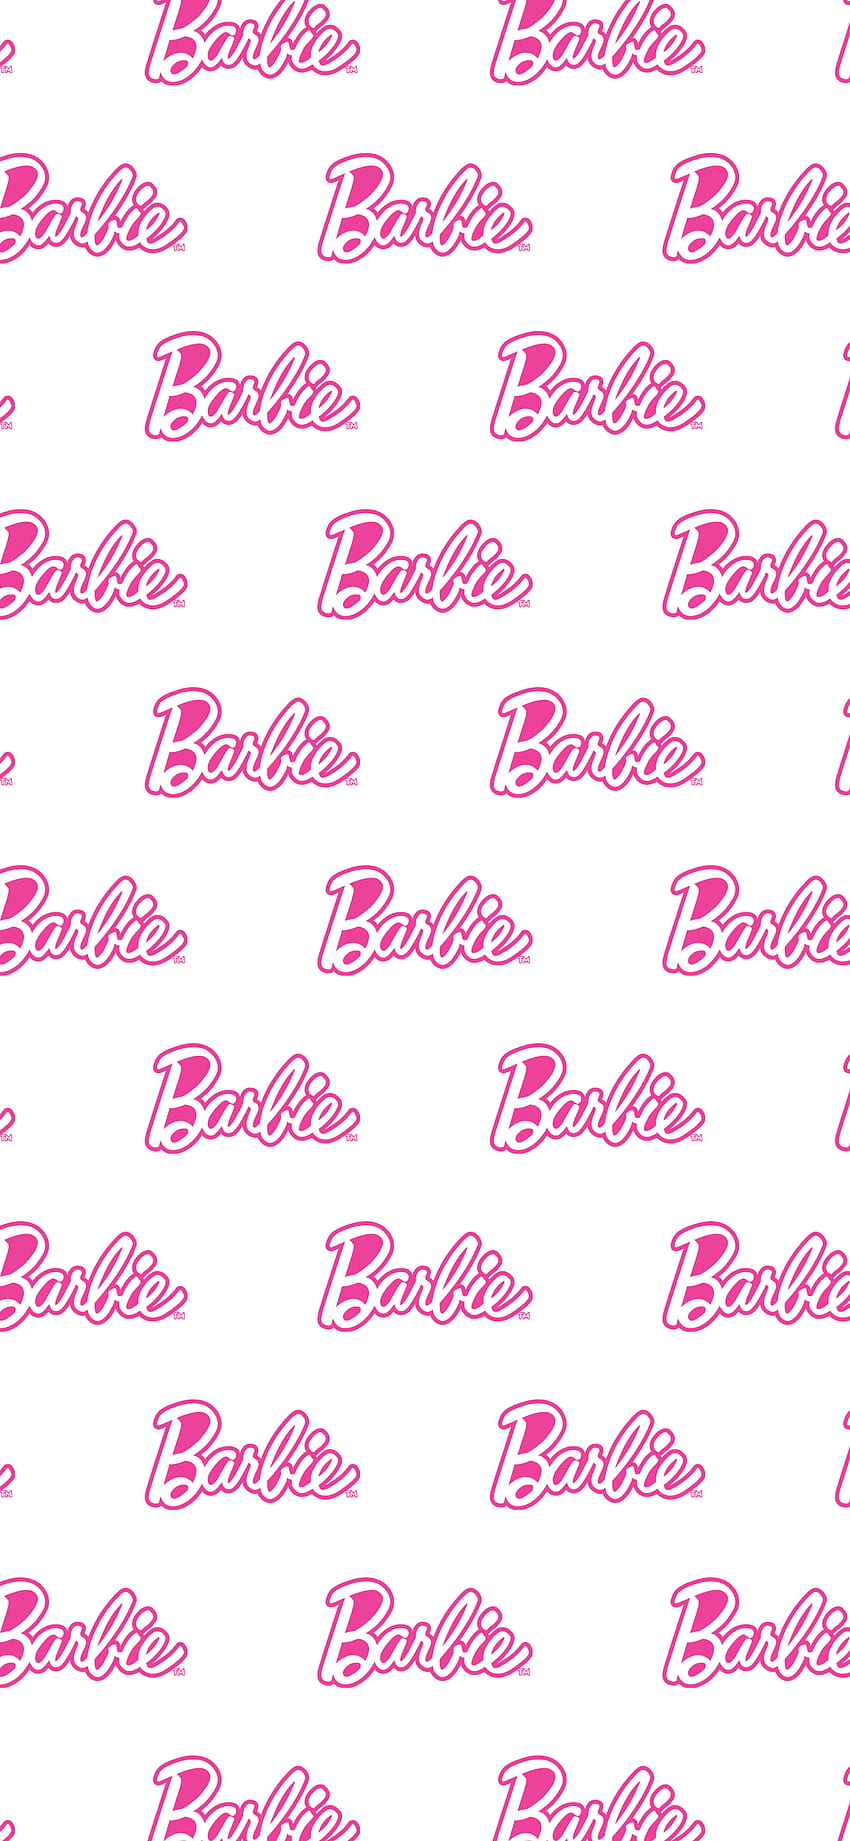 Barbie HD wallpapers | Pxfuel